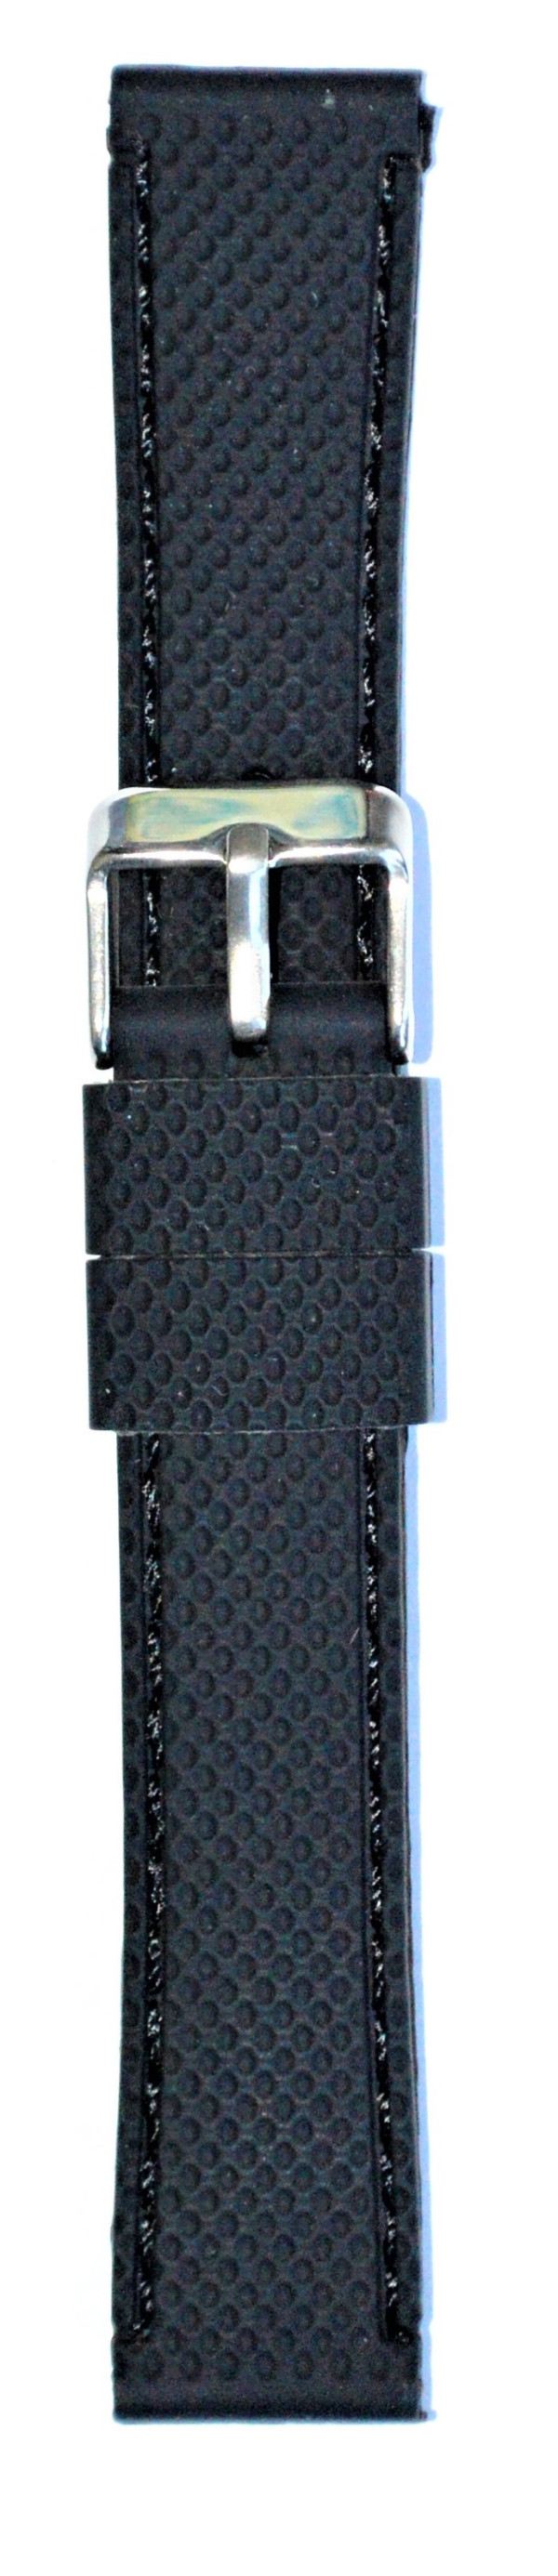 Silikonski kaiš - SK 18.23 Crna boja 18mm